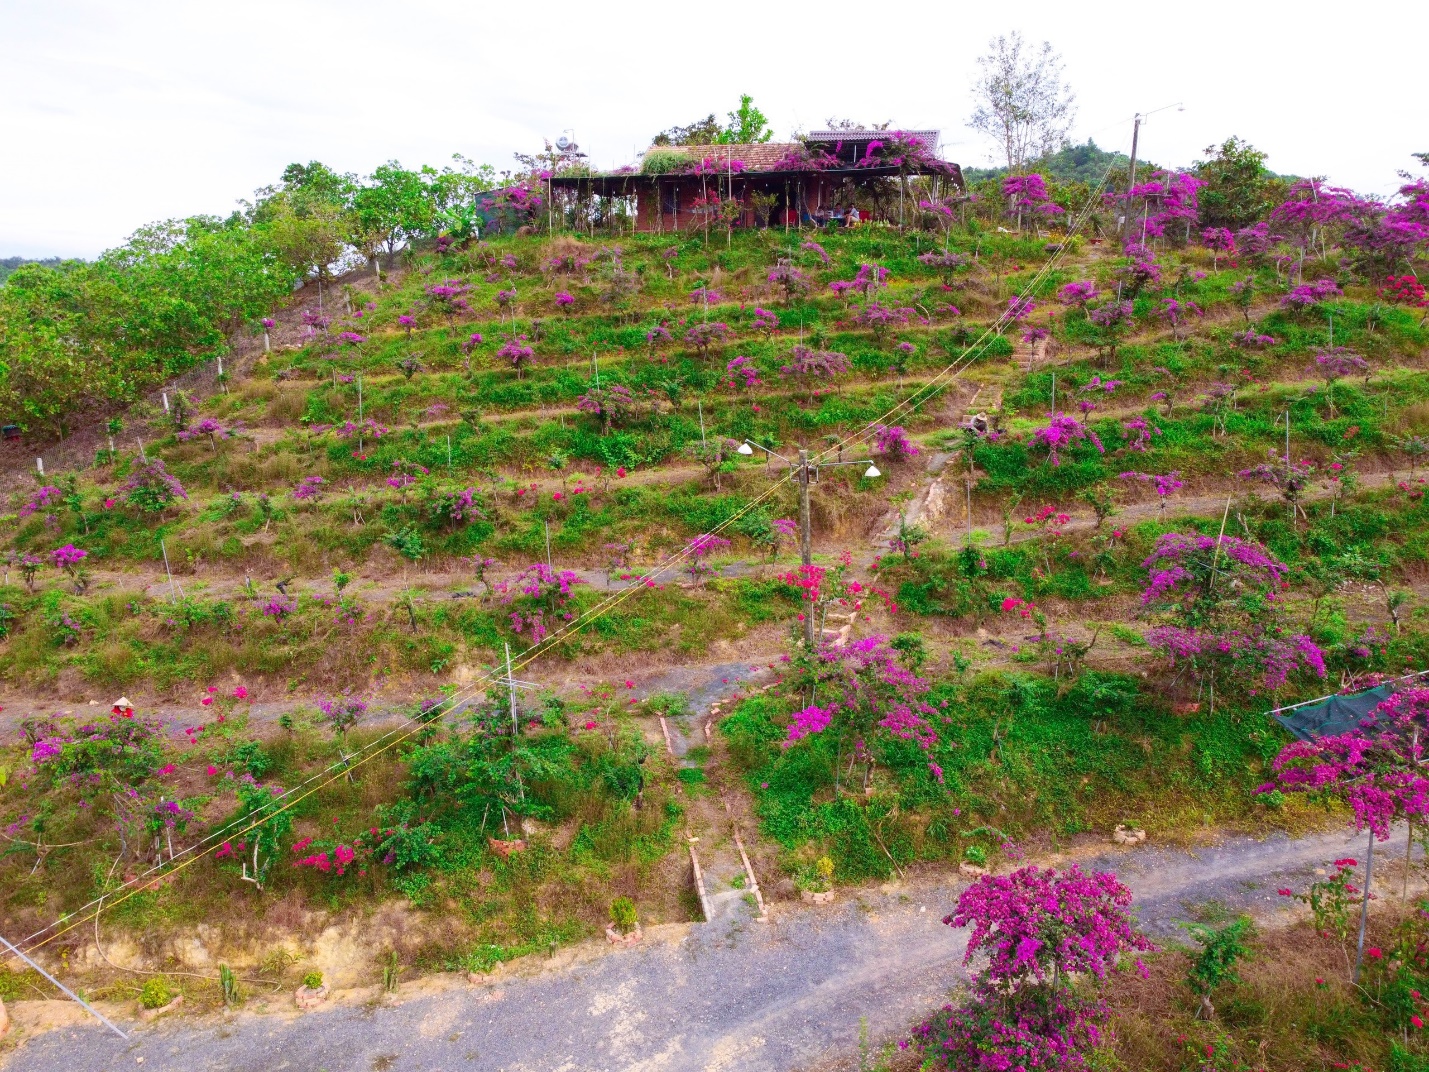 Mua 5.500 m2 đất cằn, chồng dựng "homestay giữa đồi hoa giấy" thoả ước mơ của vợ - 1